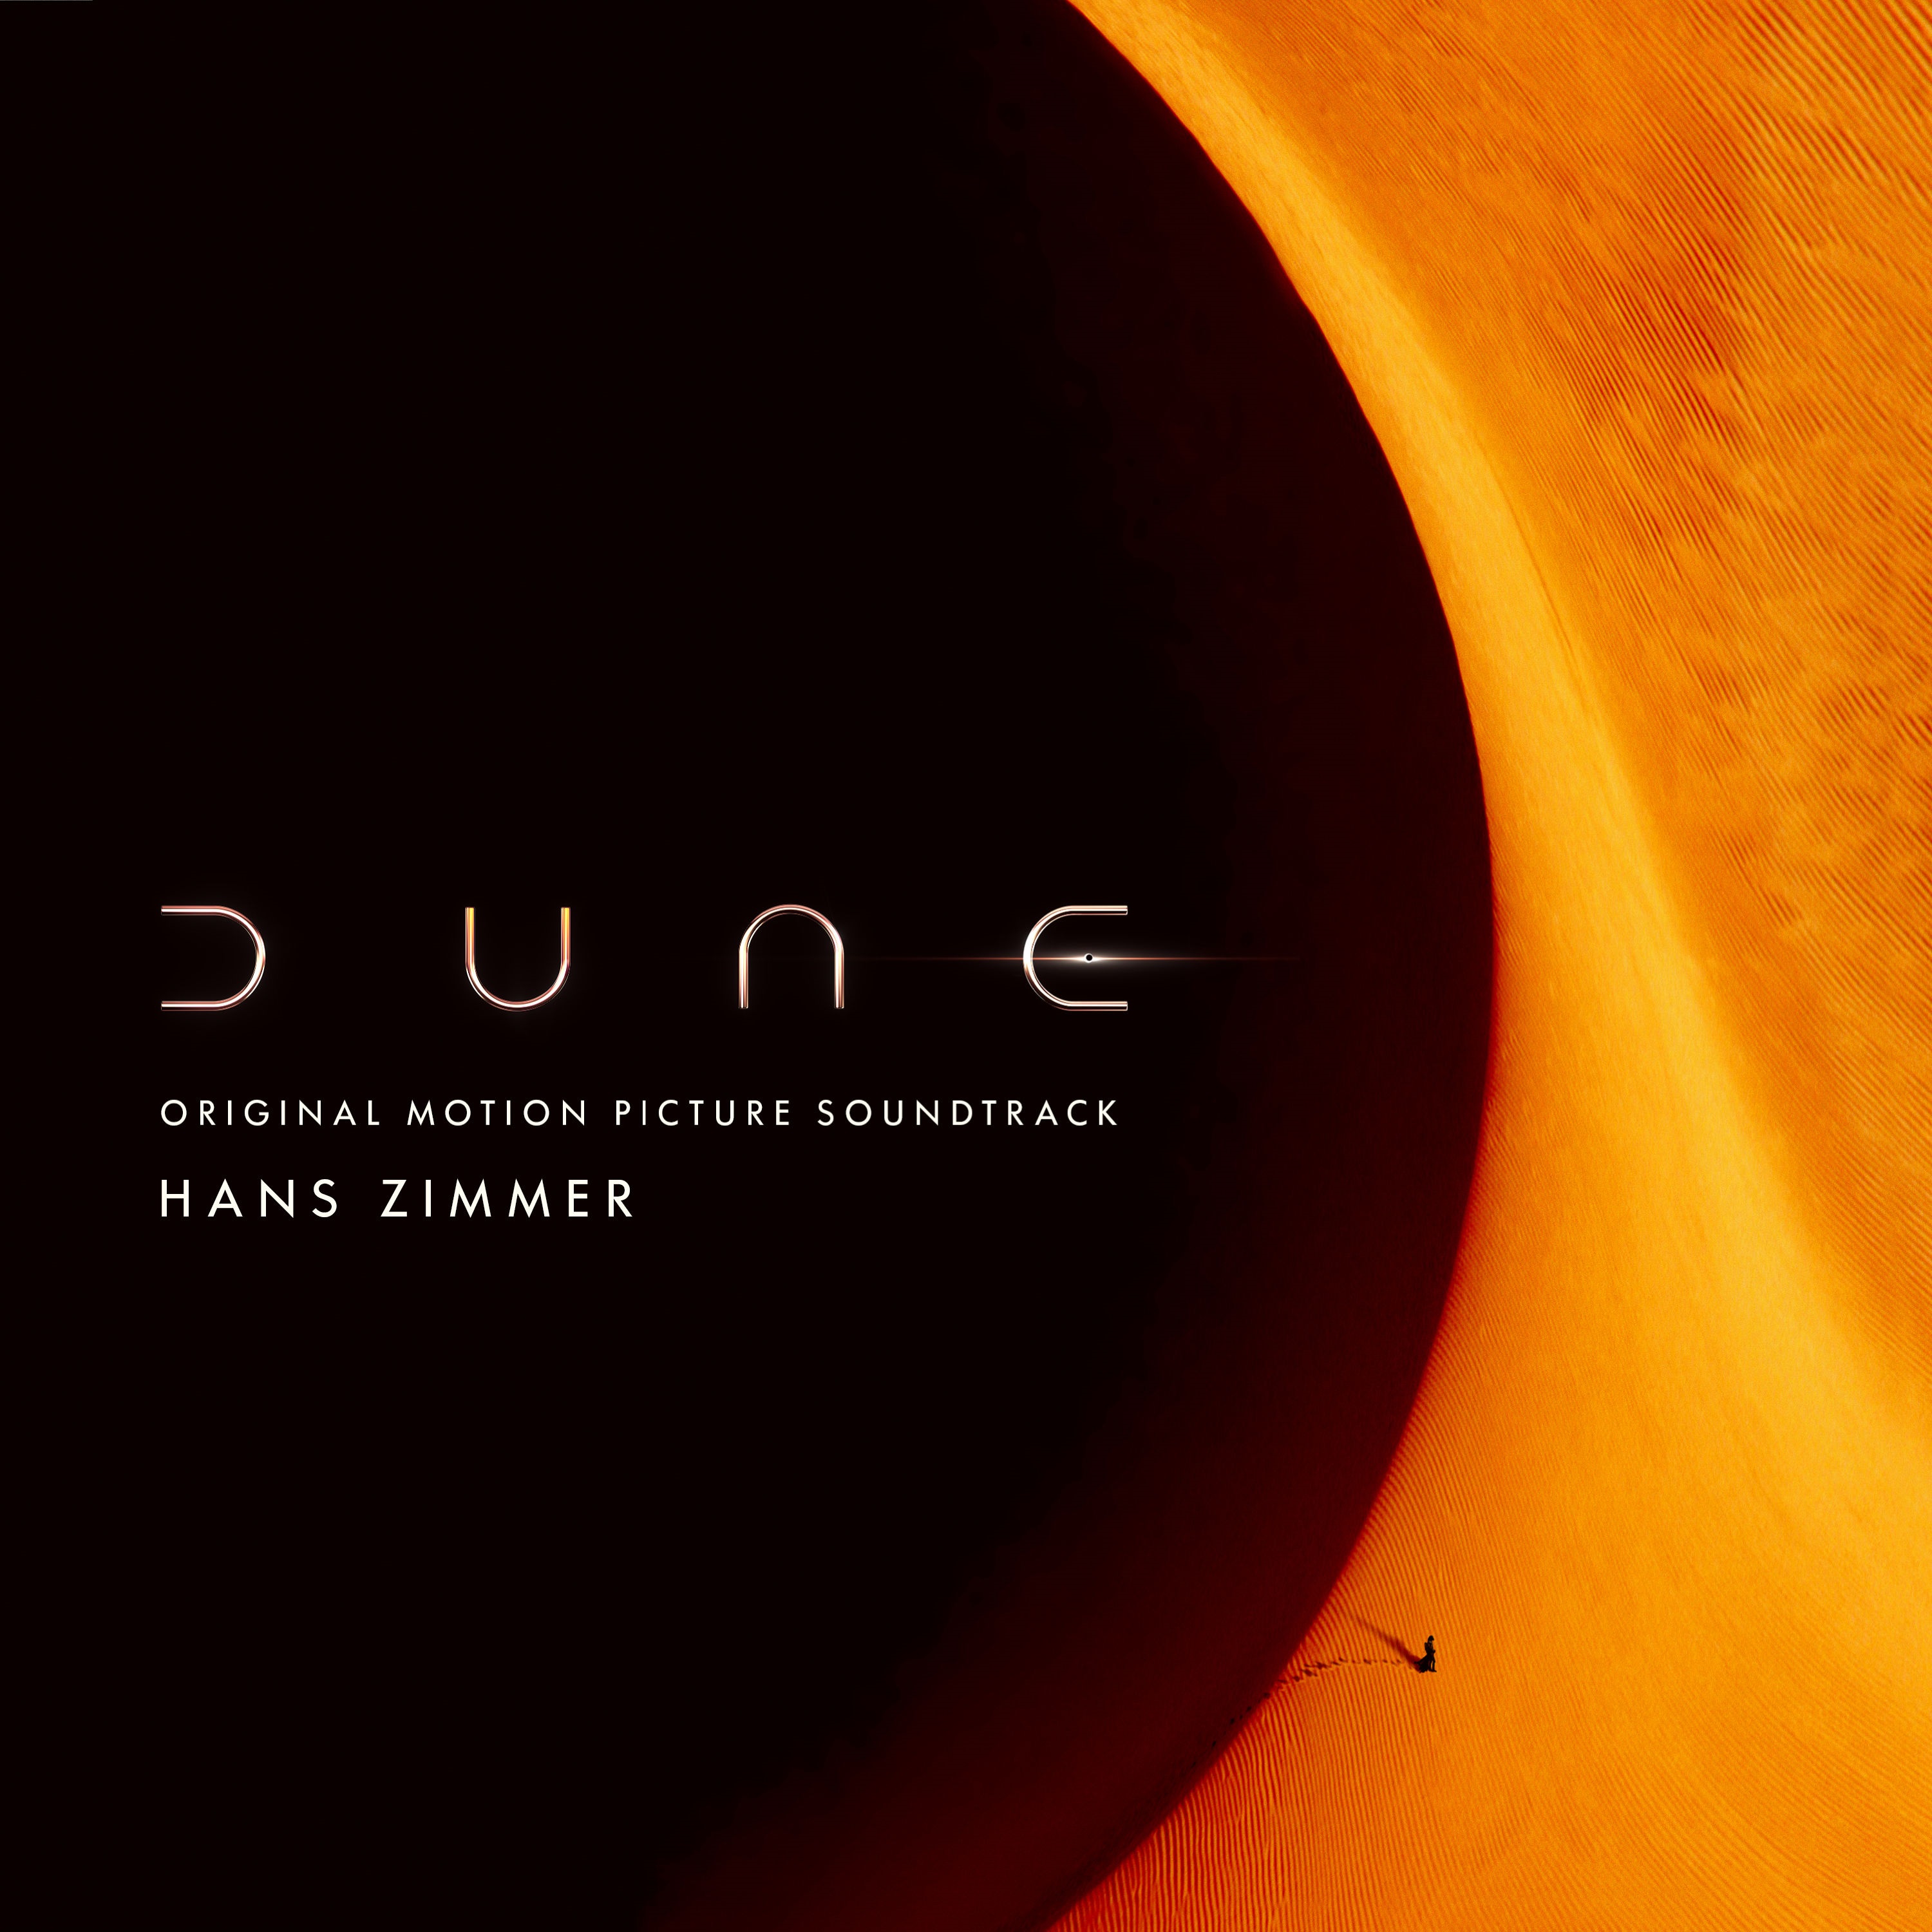 Hans Zimmer – Dune (Original Motion Picture Soundtrack) (2021) [FLAC 24bit/48kHz]